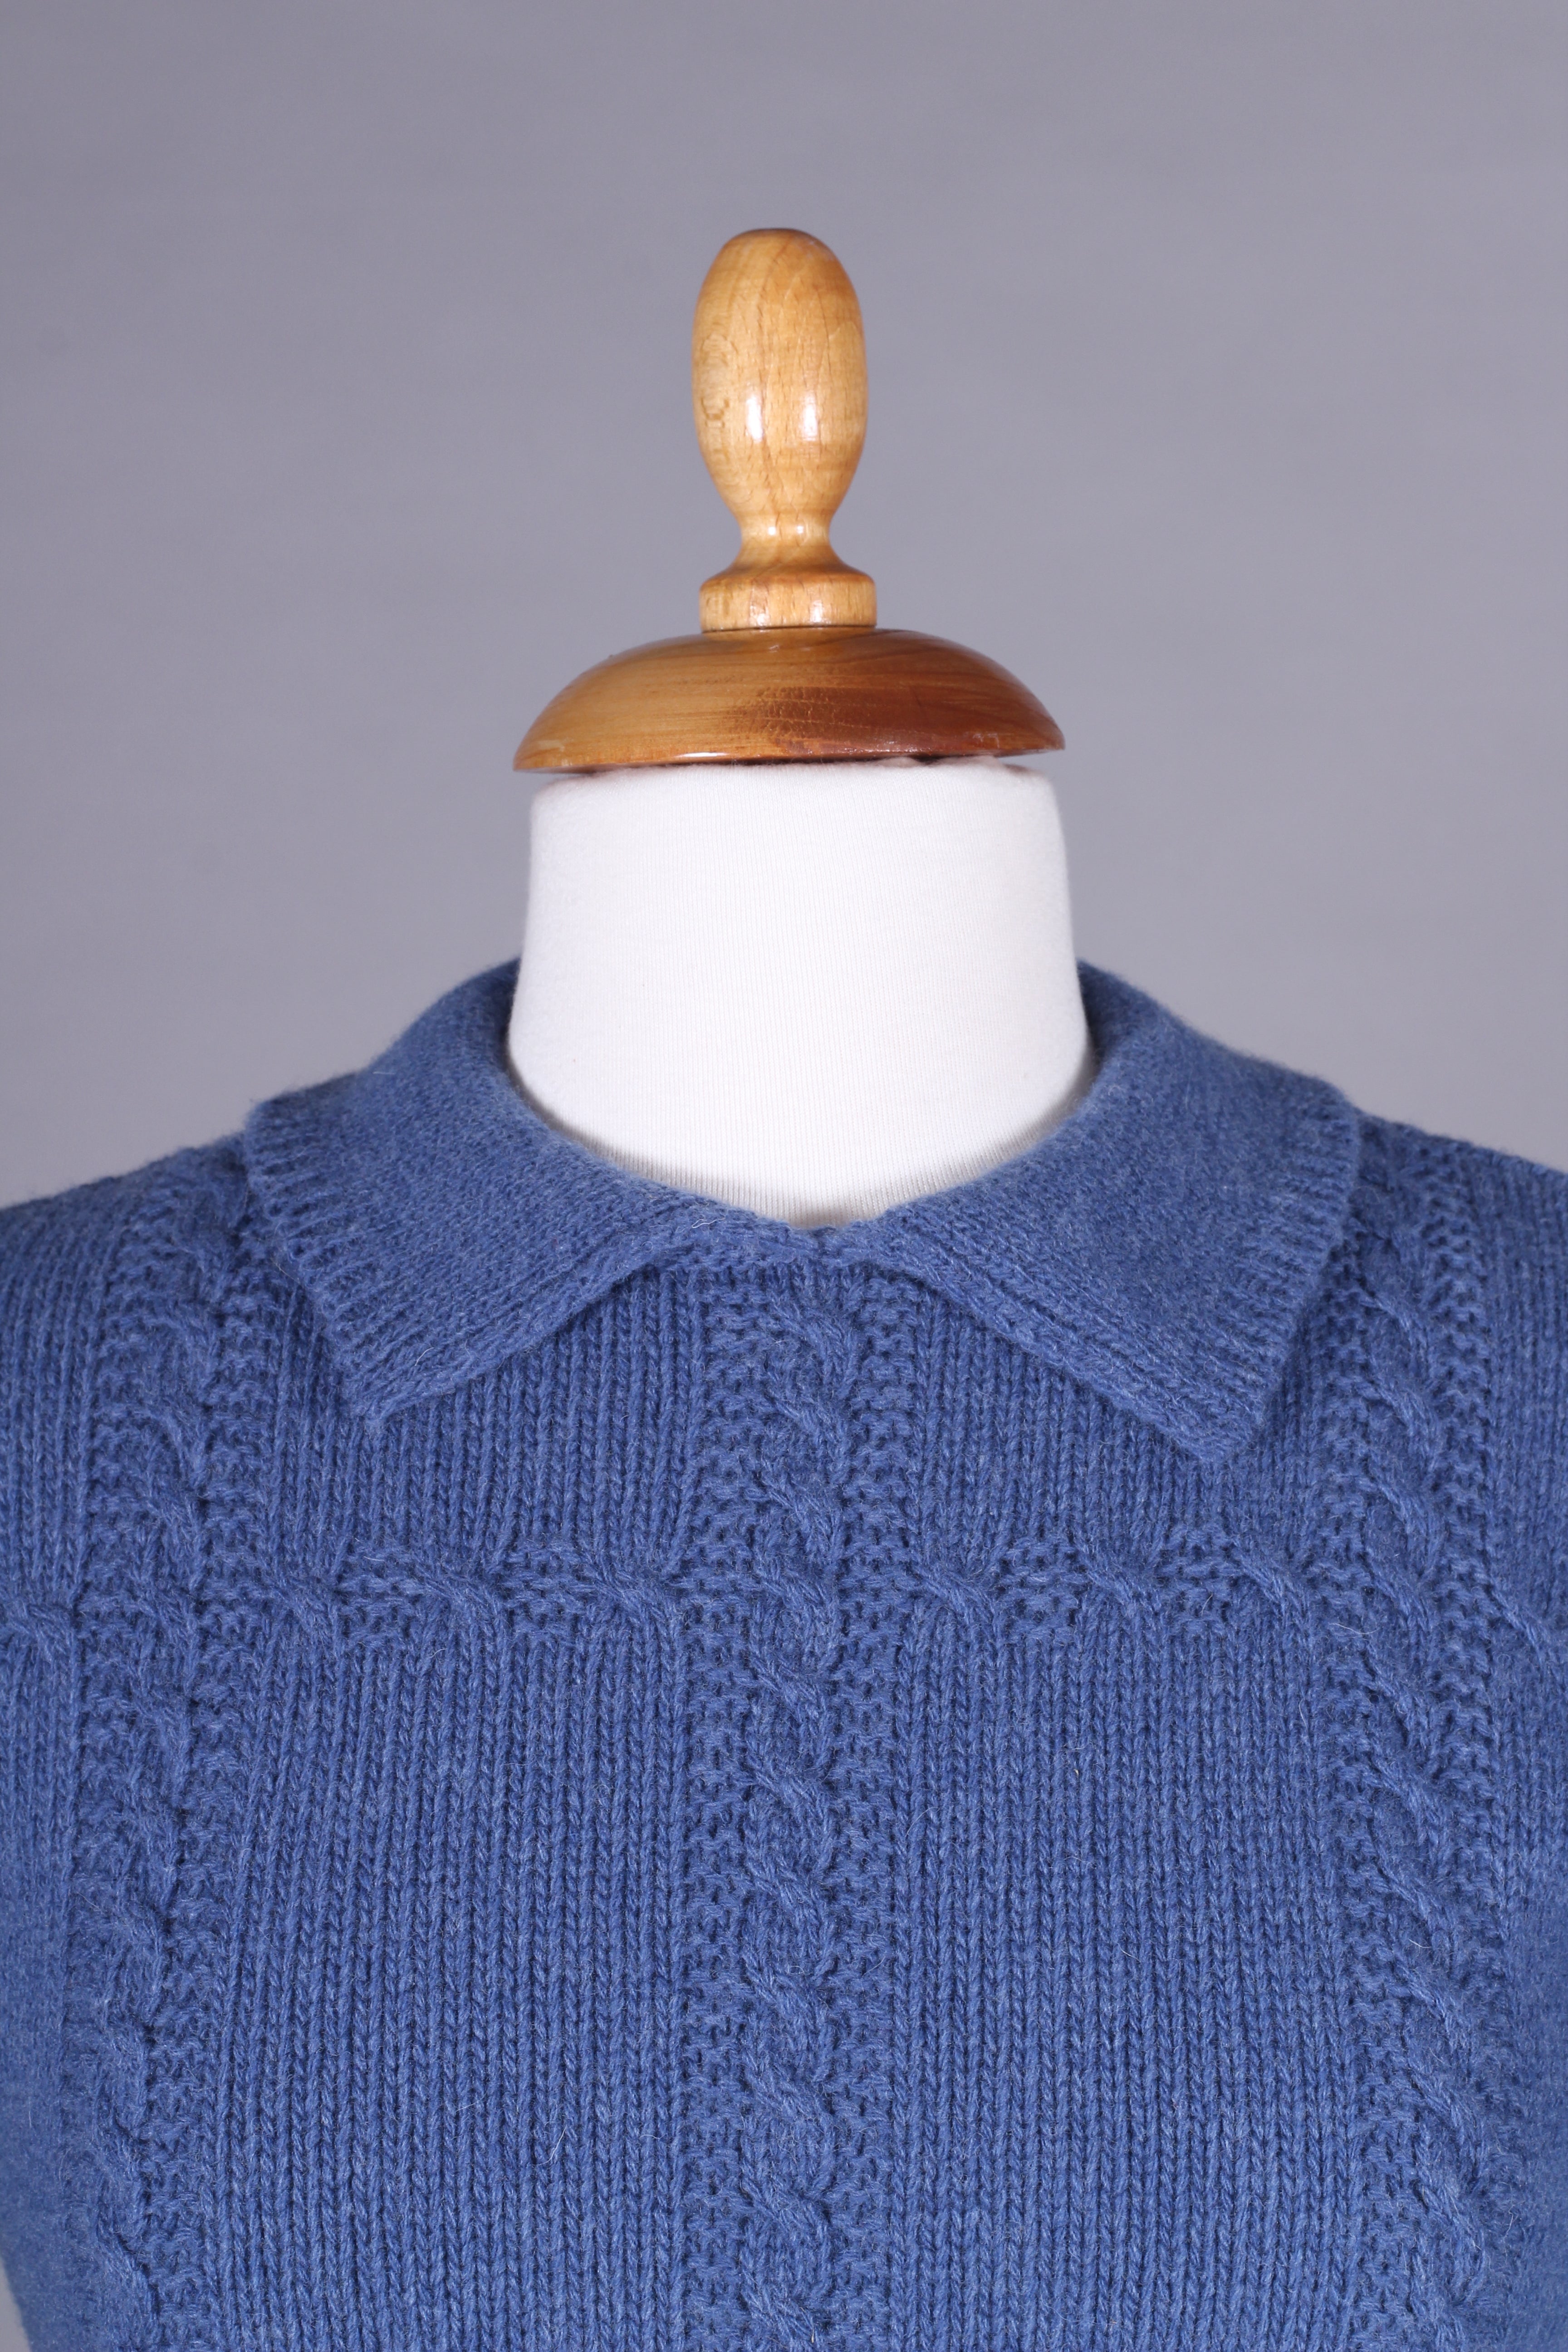 1940’er / 1950’er vintage style pullover - Lyseblå - Gertrud